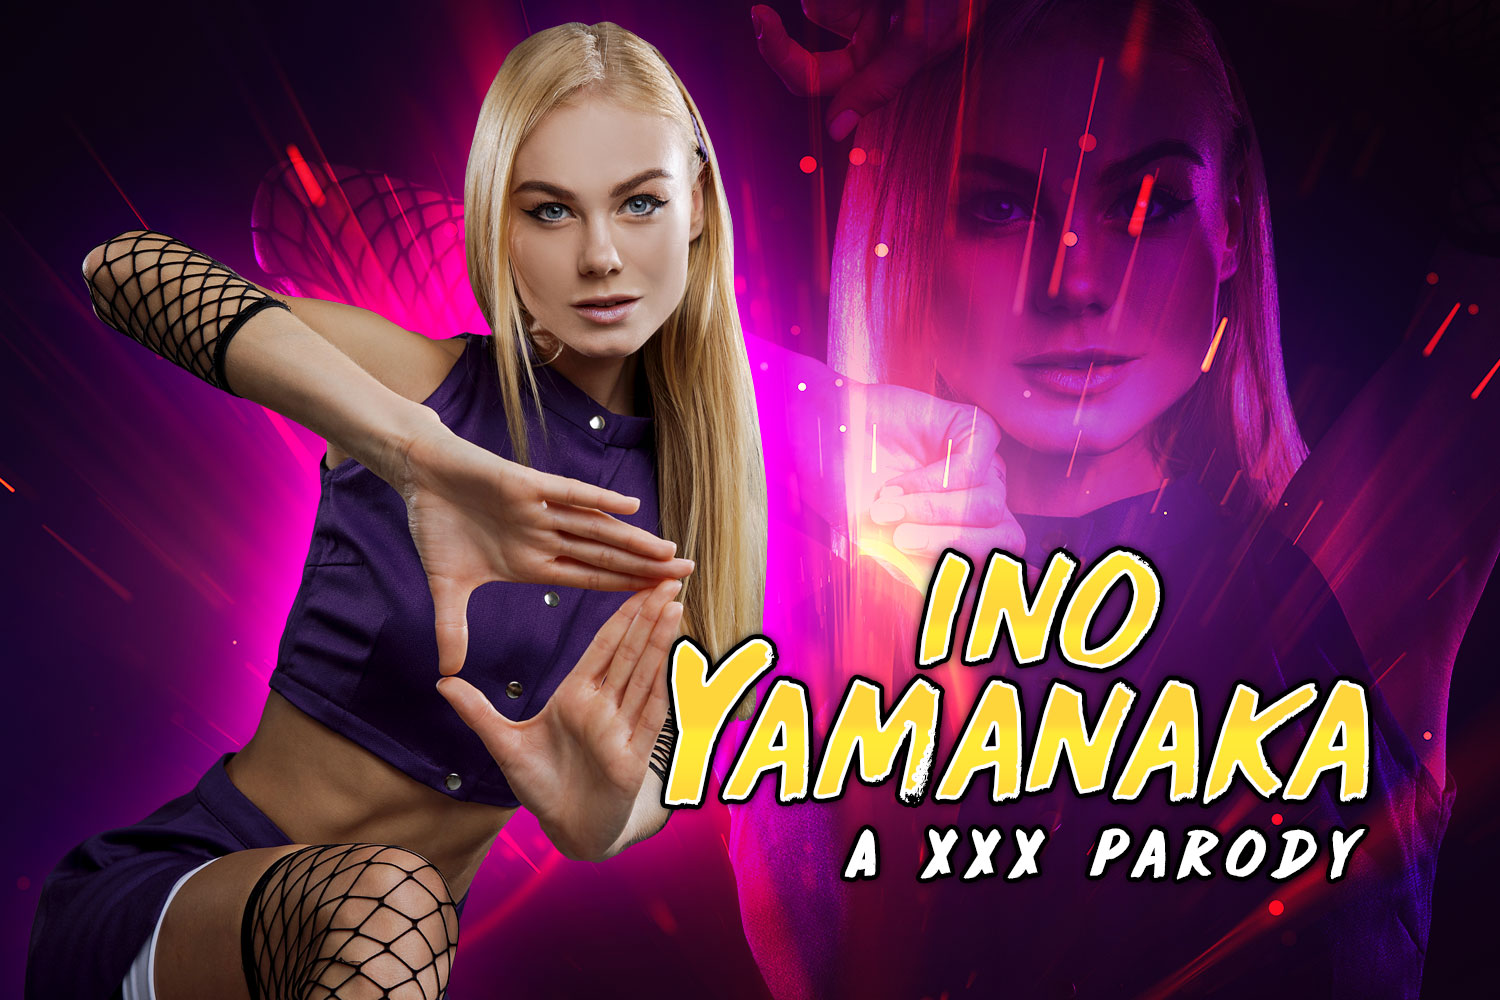 1500px x 1000px - Naruto: Ino Yamanaka A XXX Parody - vrpornjack